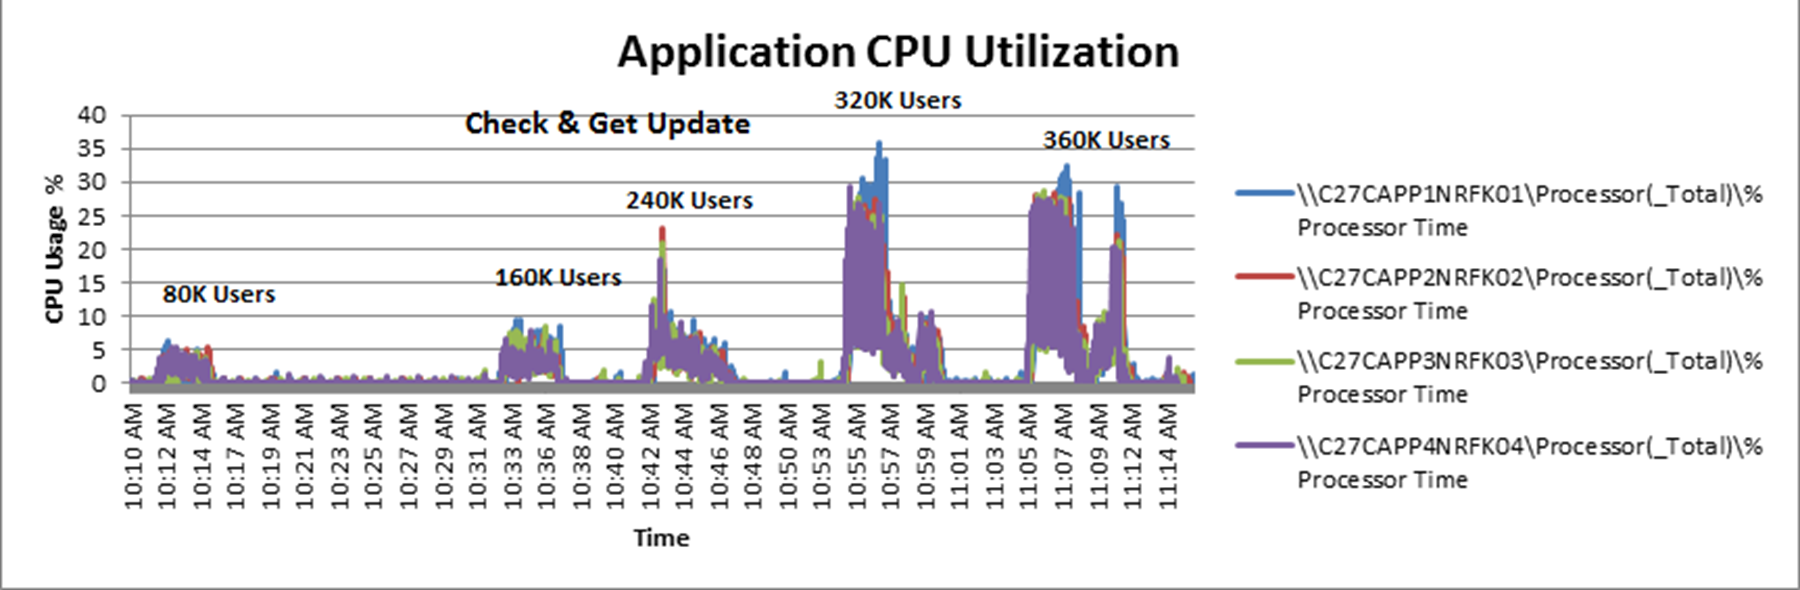 Application CPU utilization %